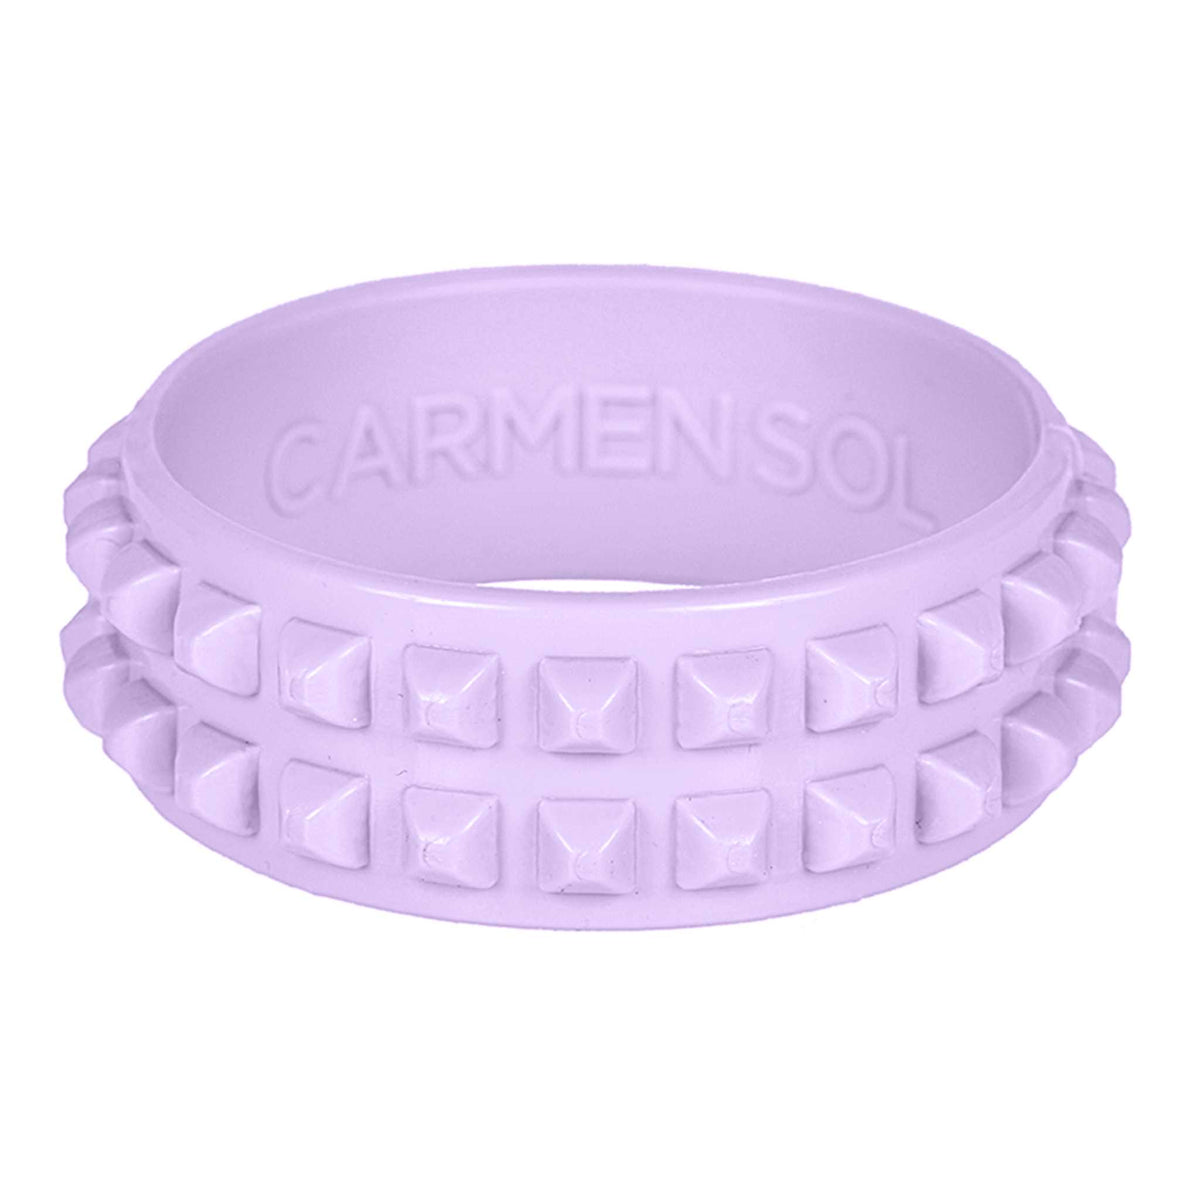 Violet 80s jelly bracelets